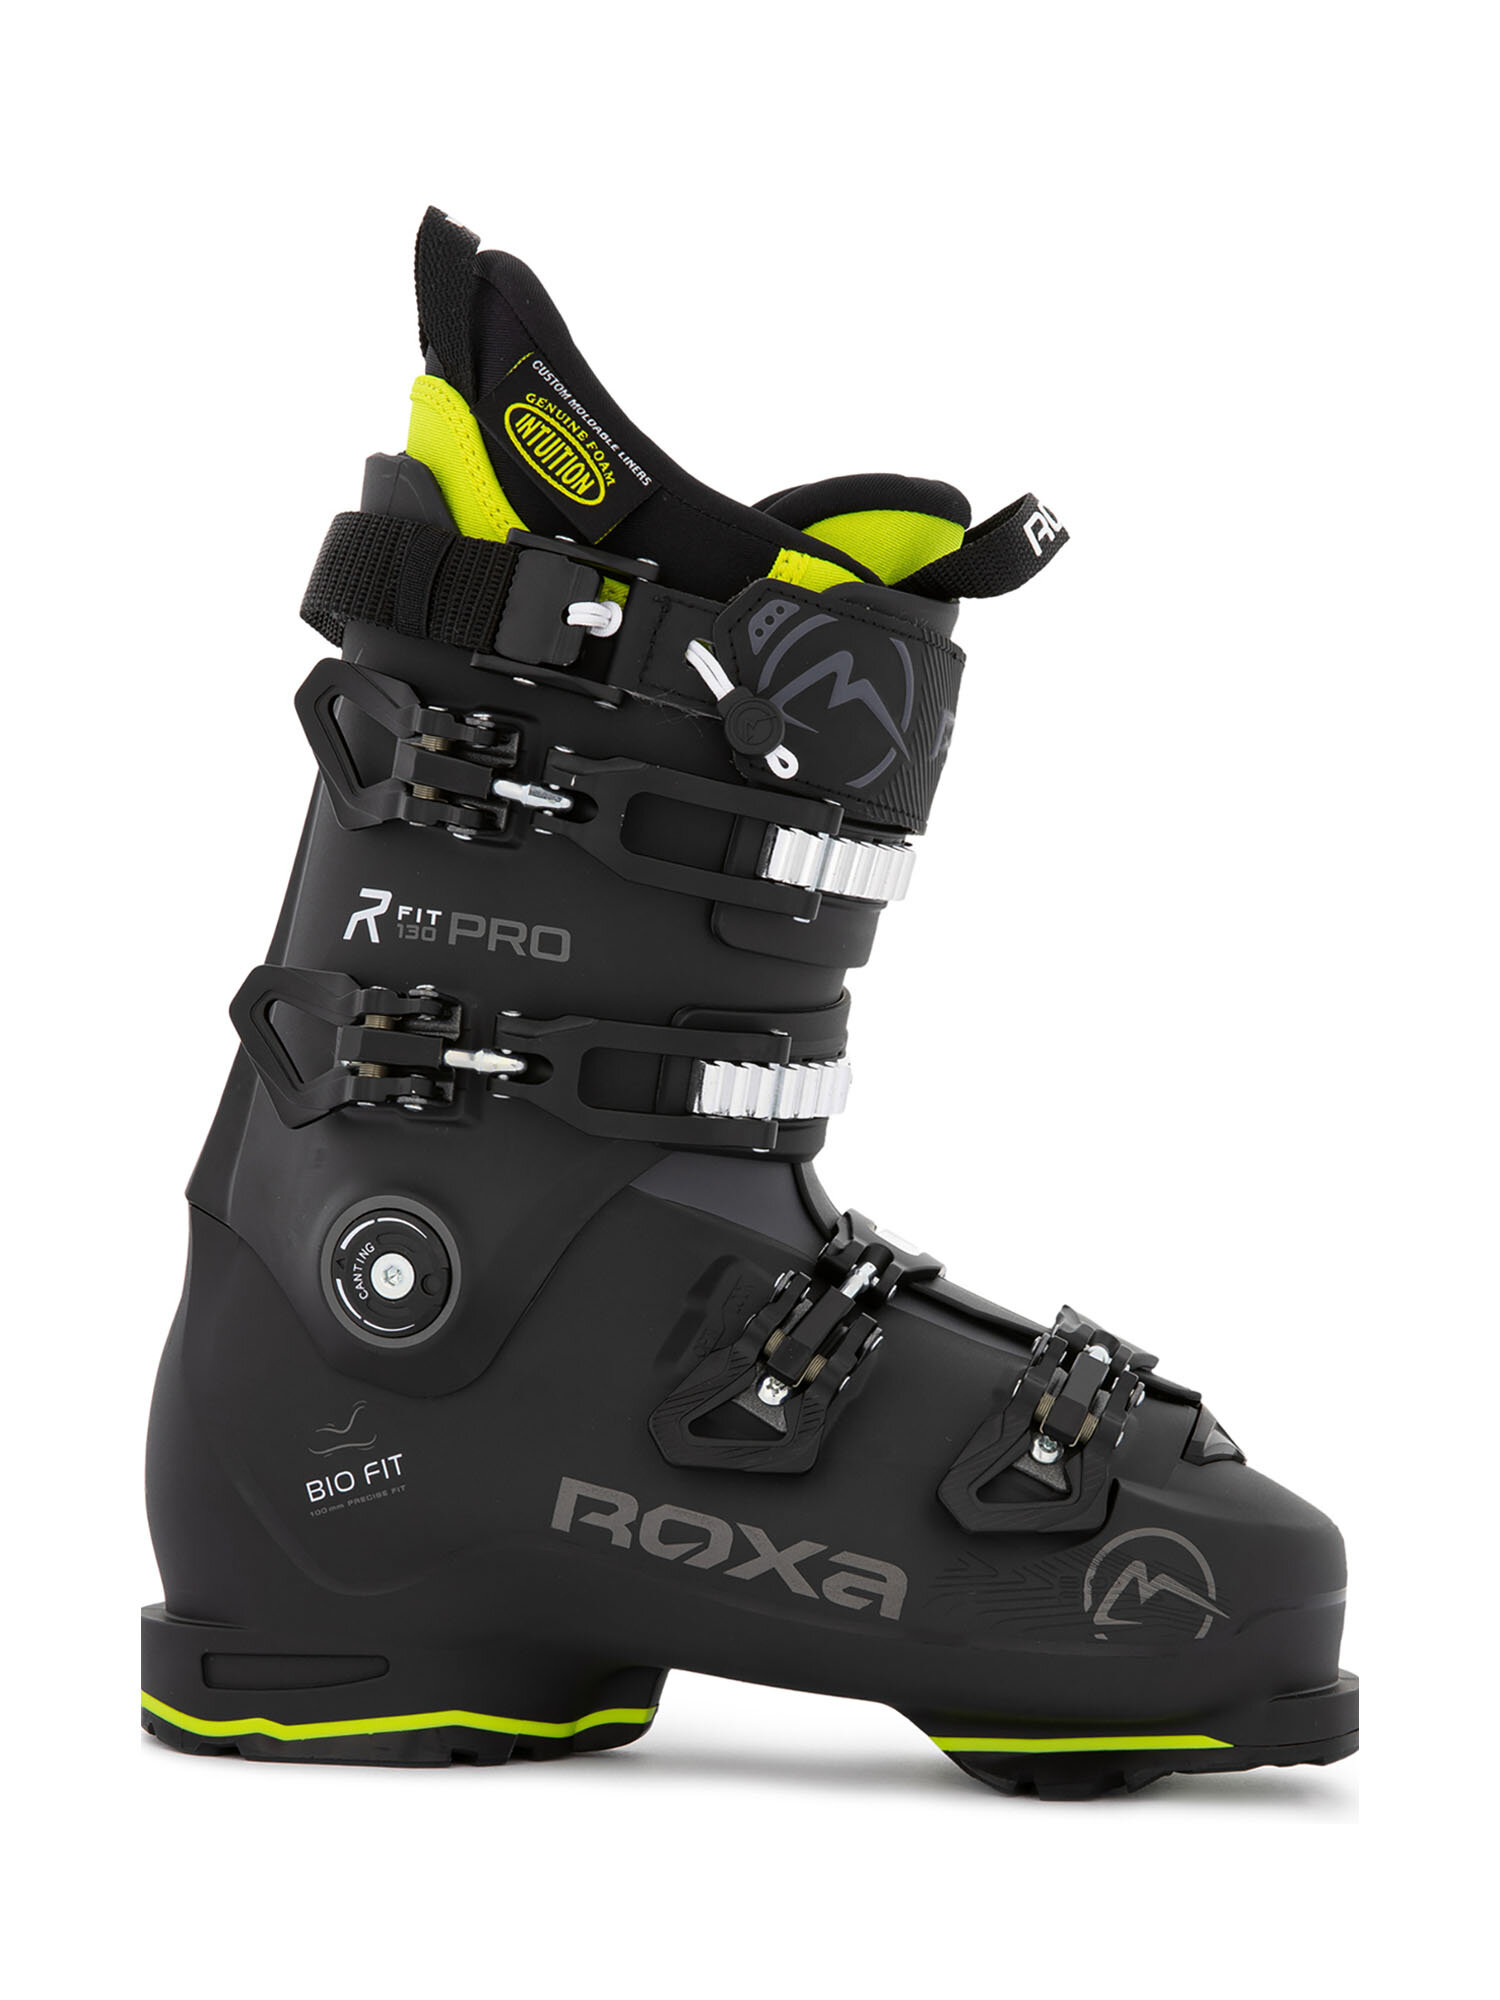 Горнолыжные ботинки ROXA Rfit Pro 130 I.R. Gw Black/Anthracite (см:25,5)